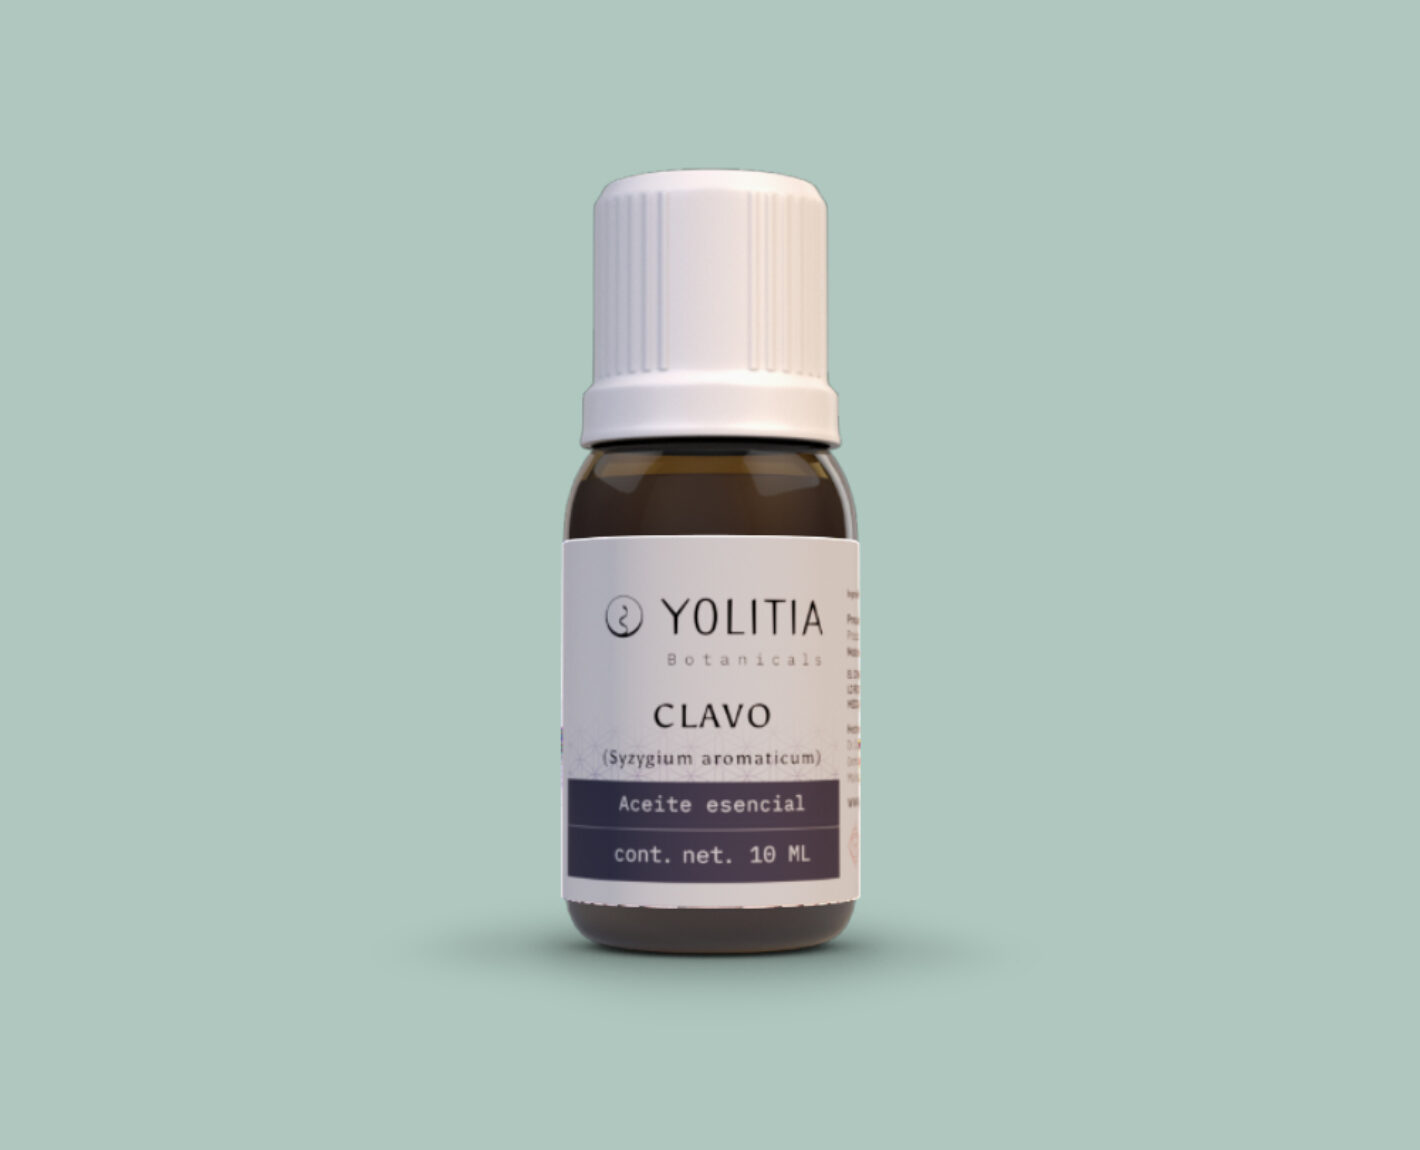 CLAVO (Syzygium aromaticum) Aceite esencial